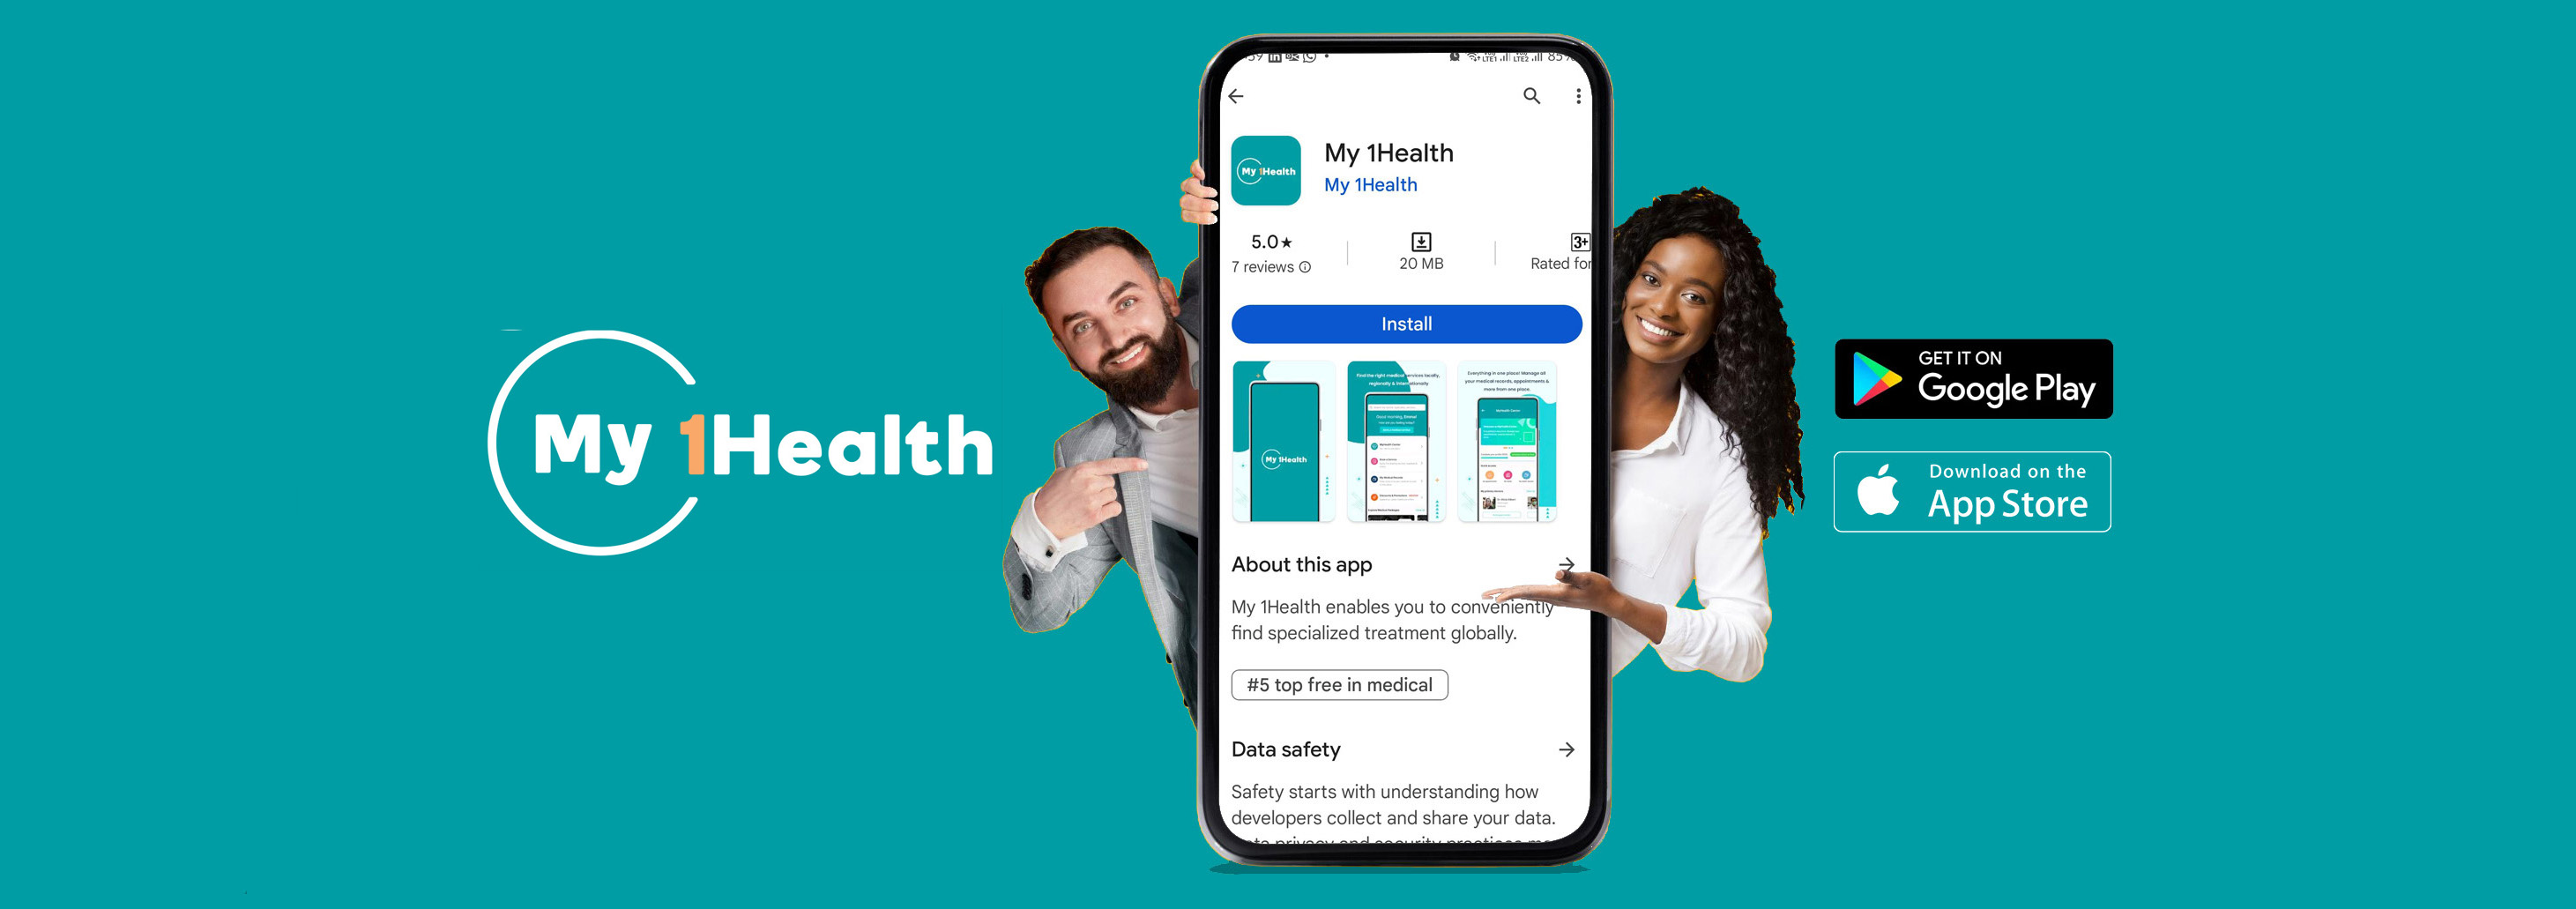 7 ways My 1Health App Simplifies Your Healthcare Journey